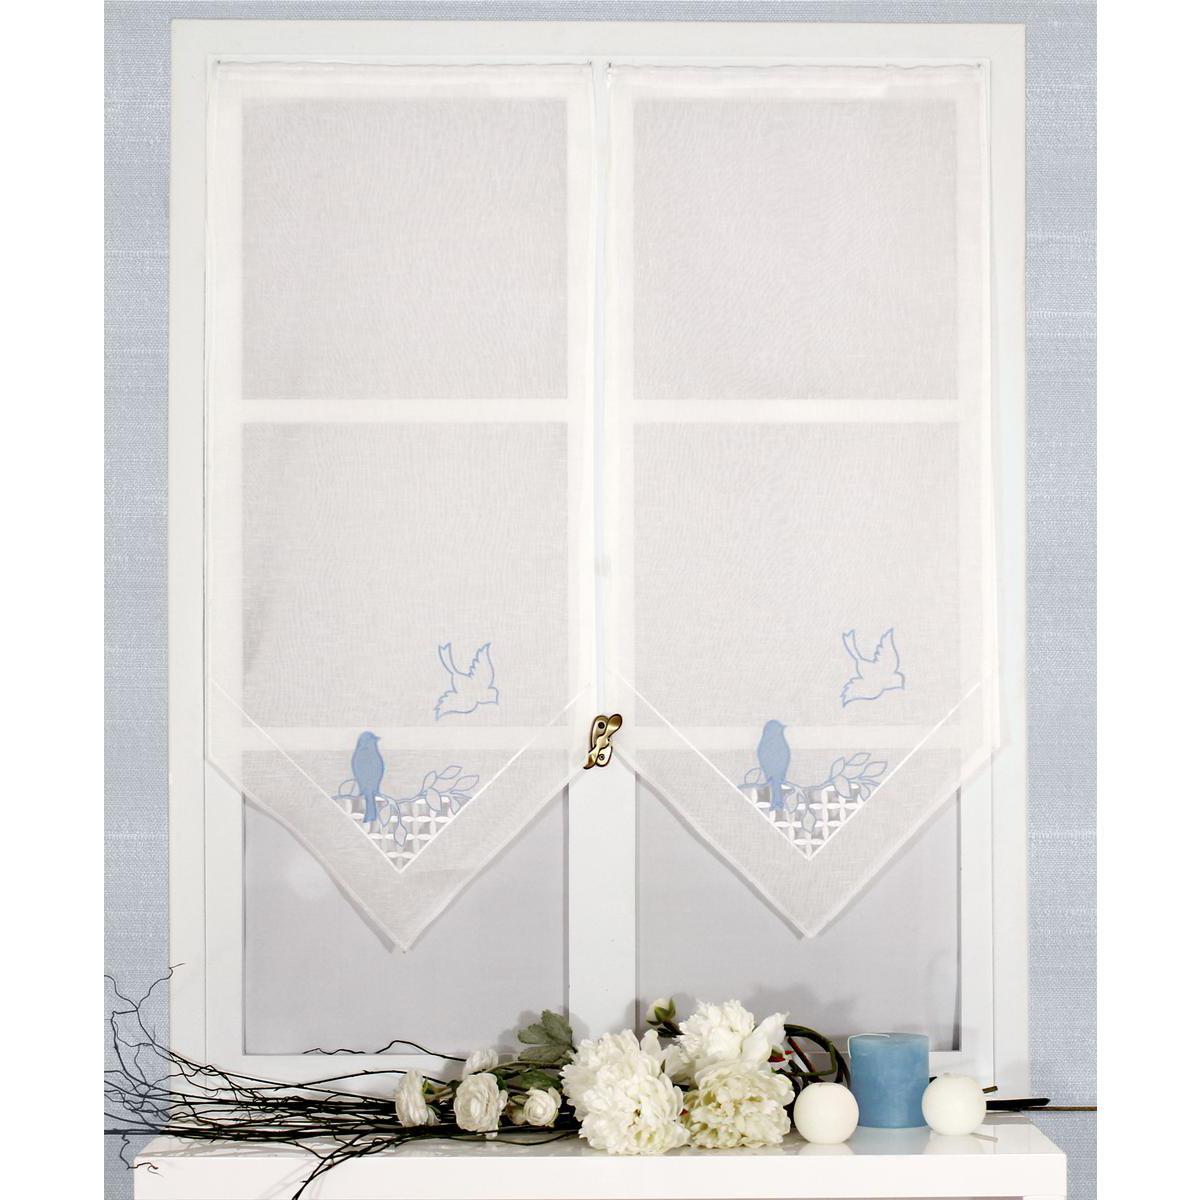 Paire de vitrages brodés - 100% polyester - 60 x 90 cm - Blanc, Bleu